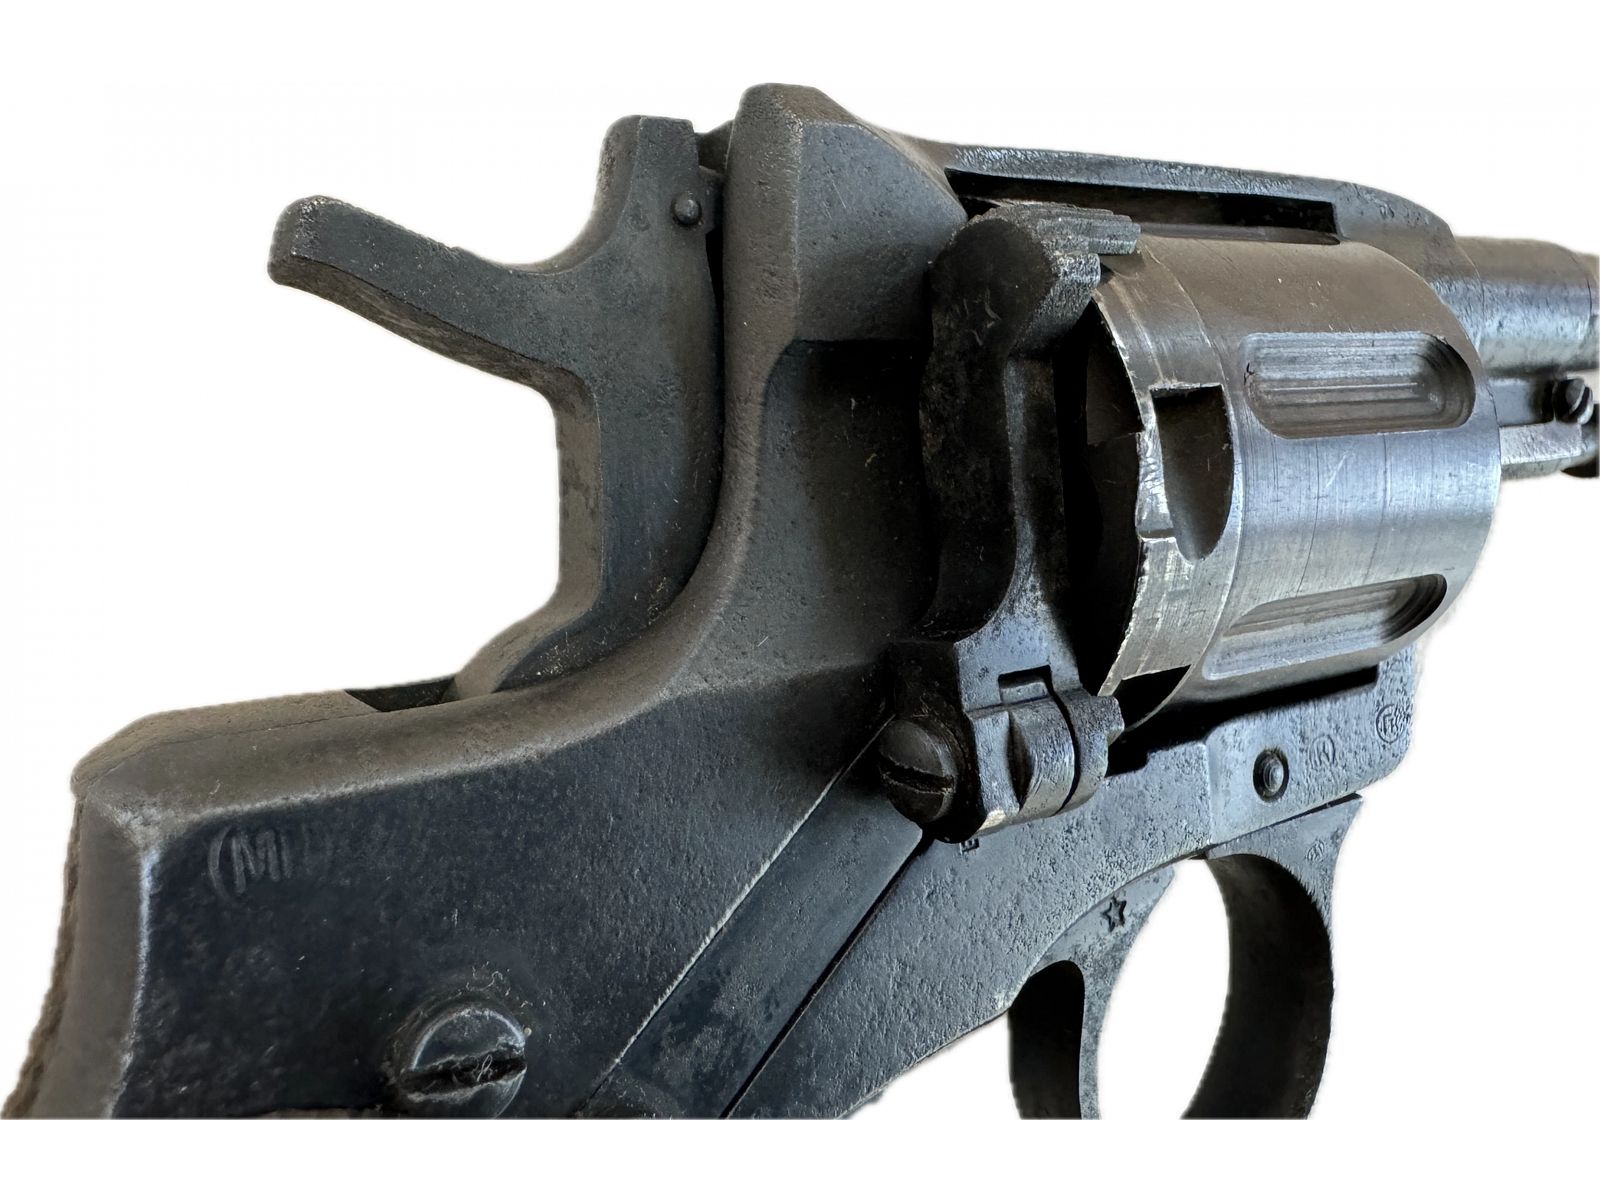 Revolver Nagant M1895 Kaliber 7,62x38mmR